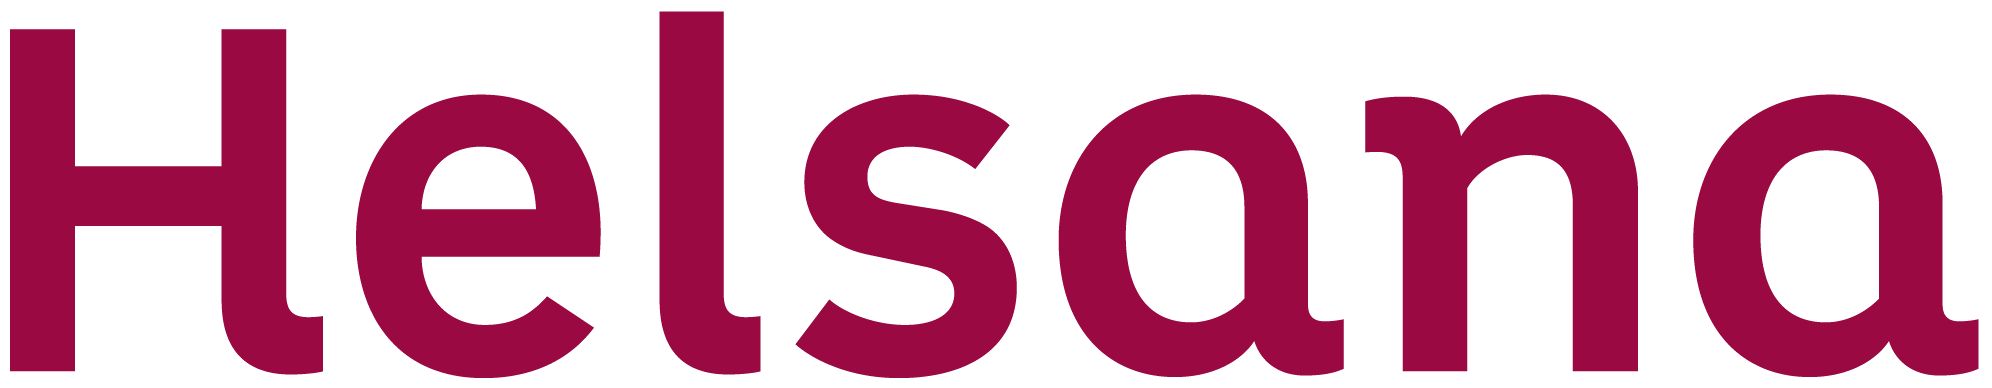 logo helsana